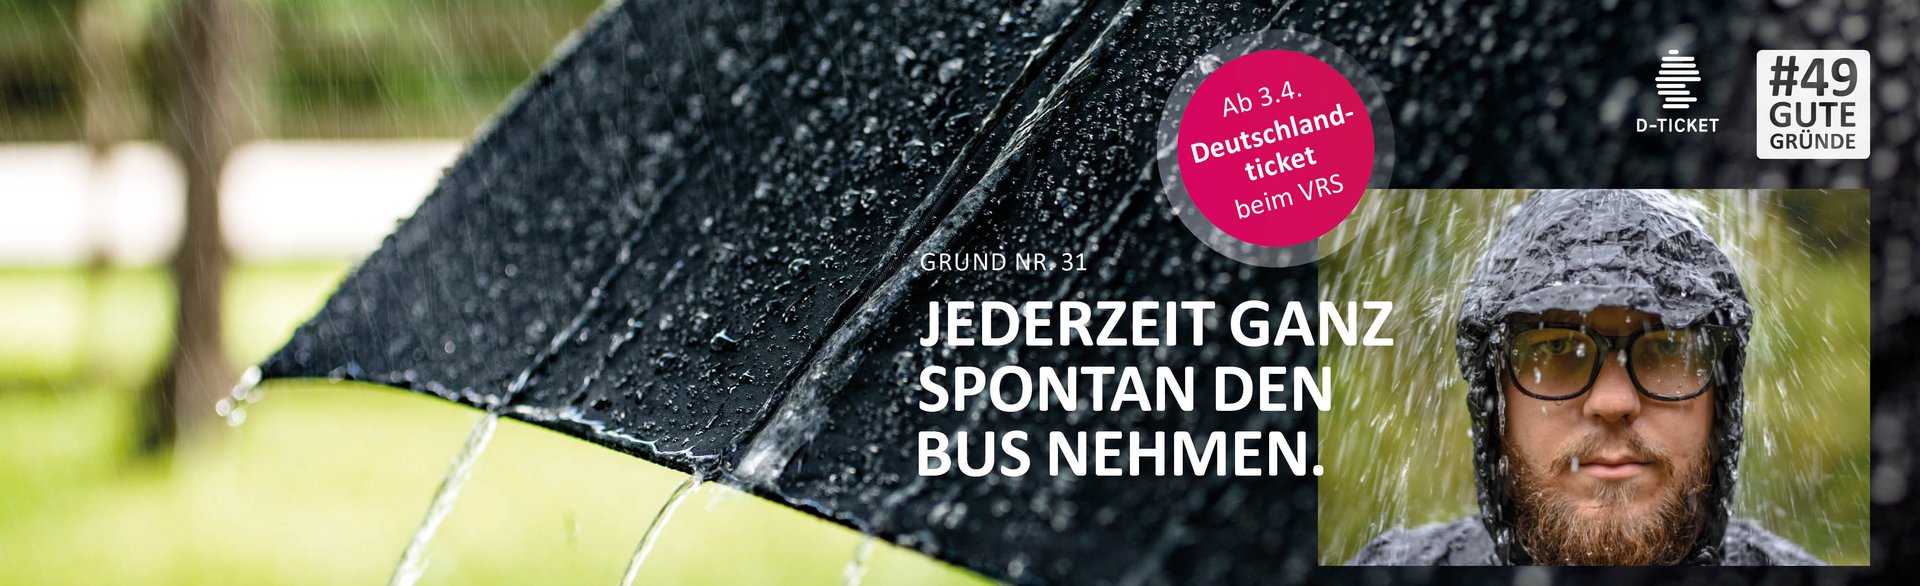 Deutschlandticket: Jederzeit ganz spontan den Bus nehmen